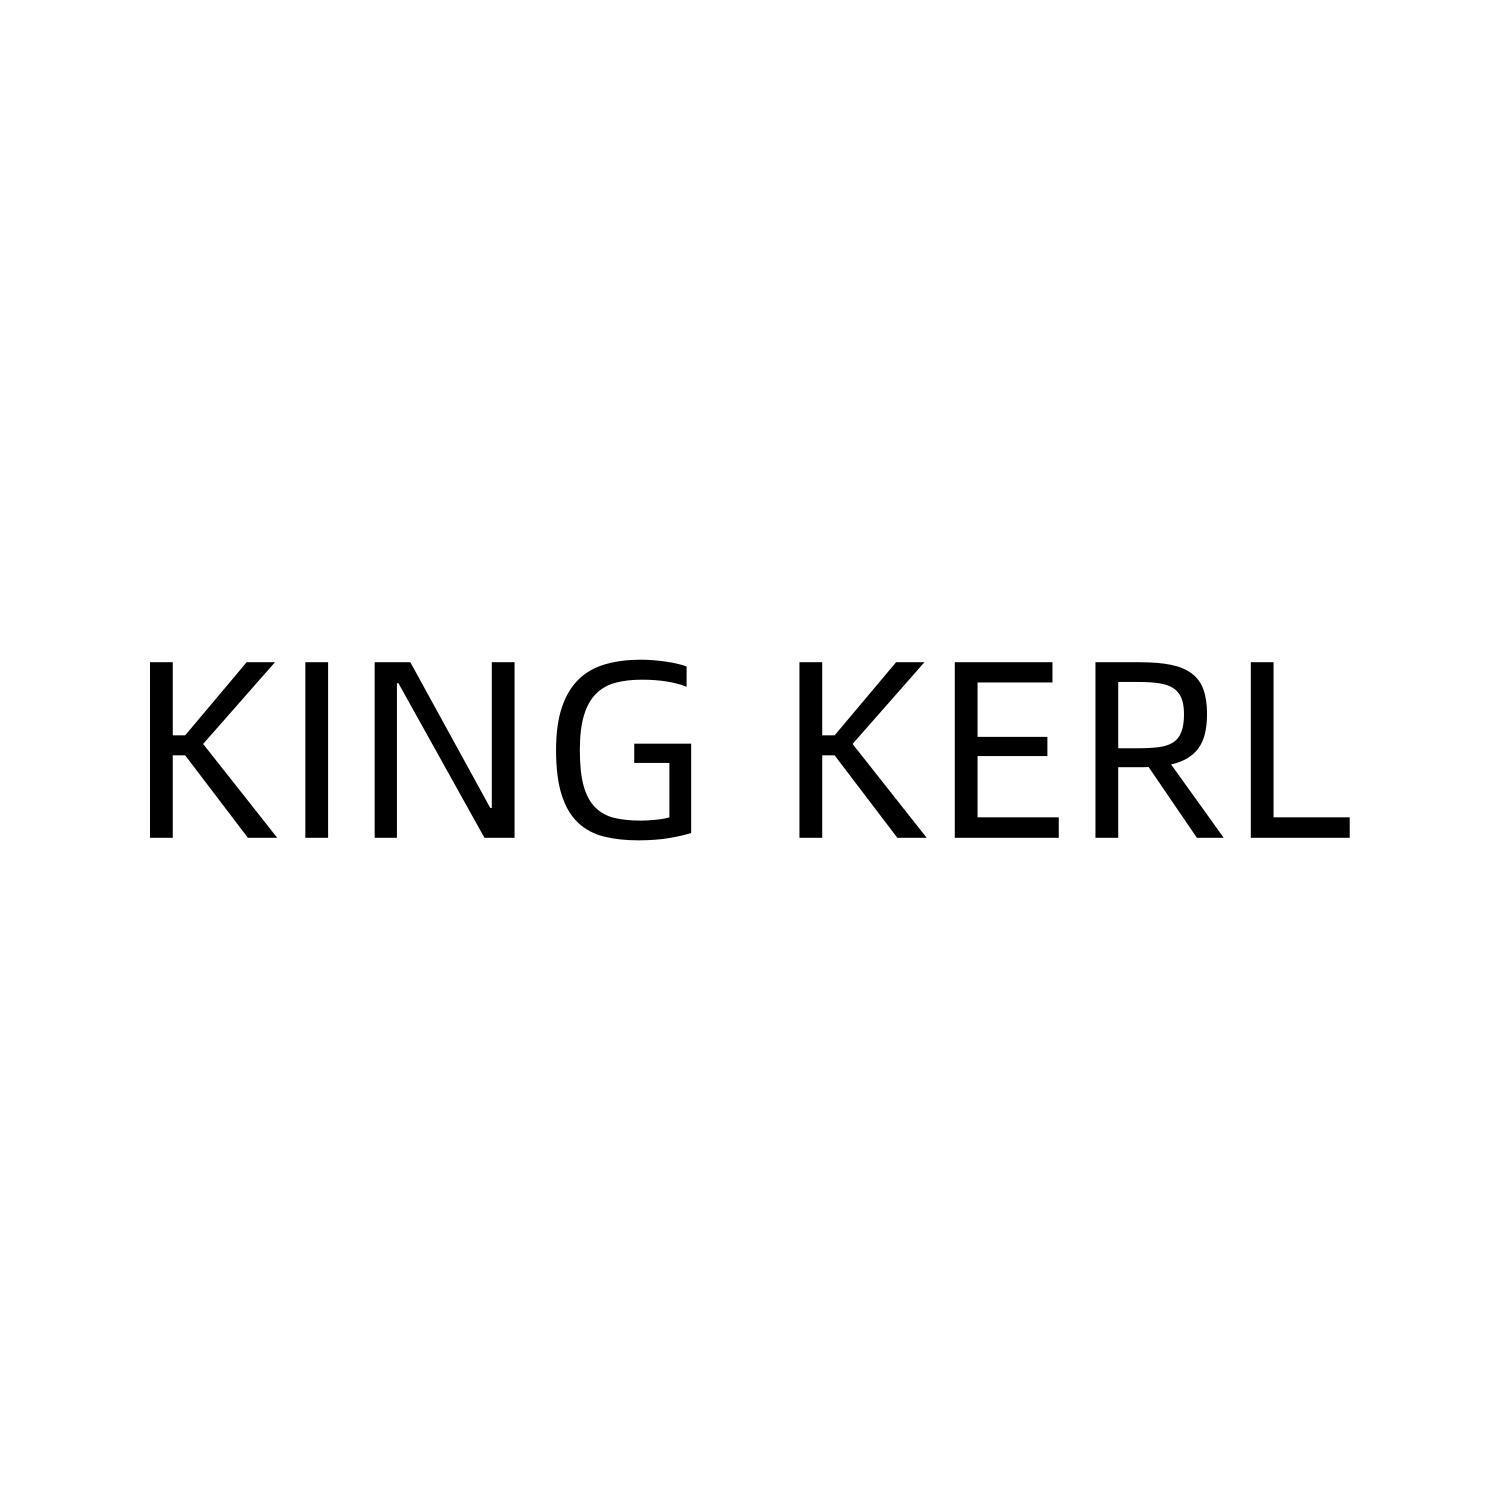 KING KERL